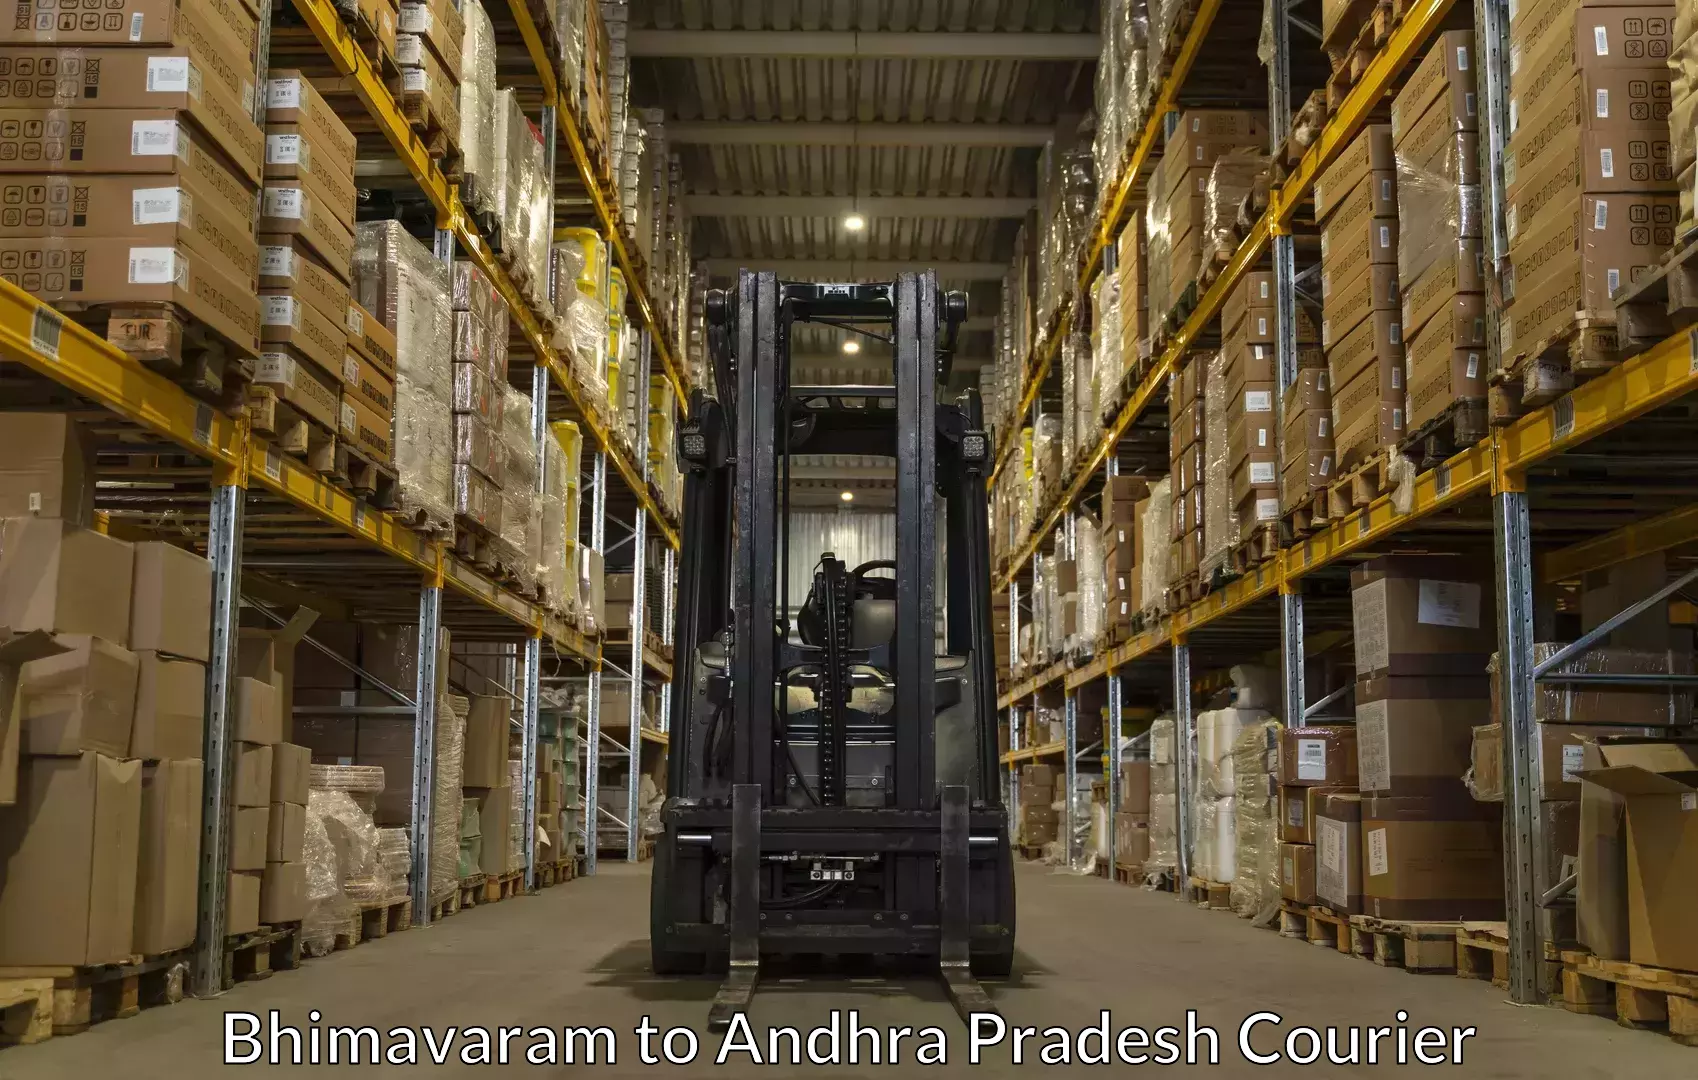 Furniture relocation experts Bhimavaram to Yellamanchili